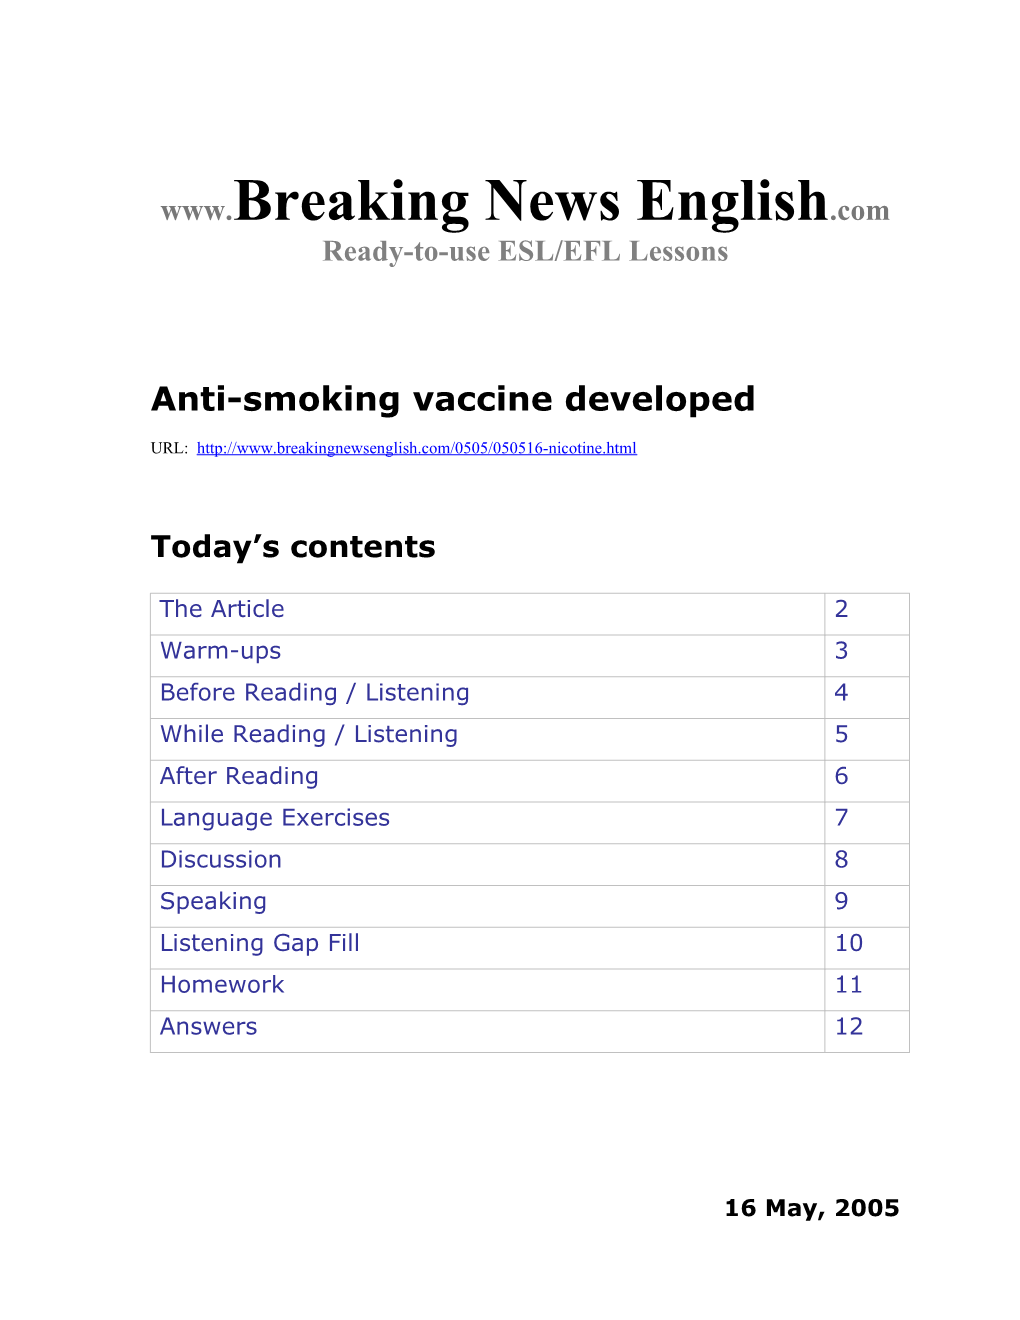 Anti-Smoking Vaccine Developed